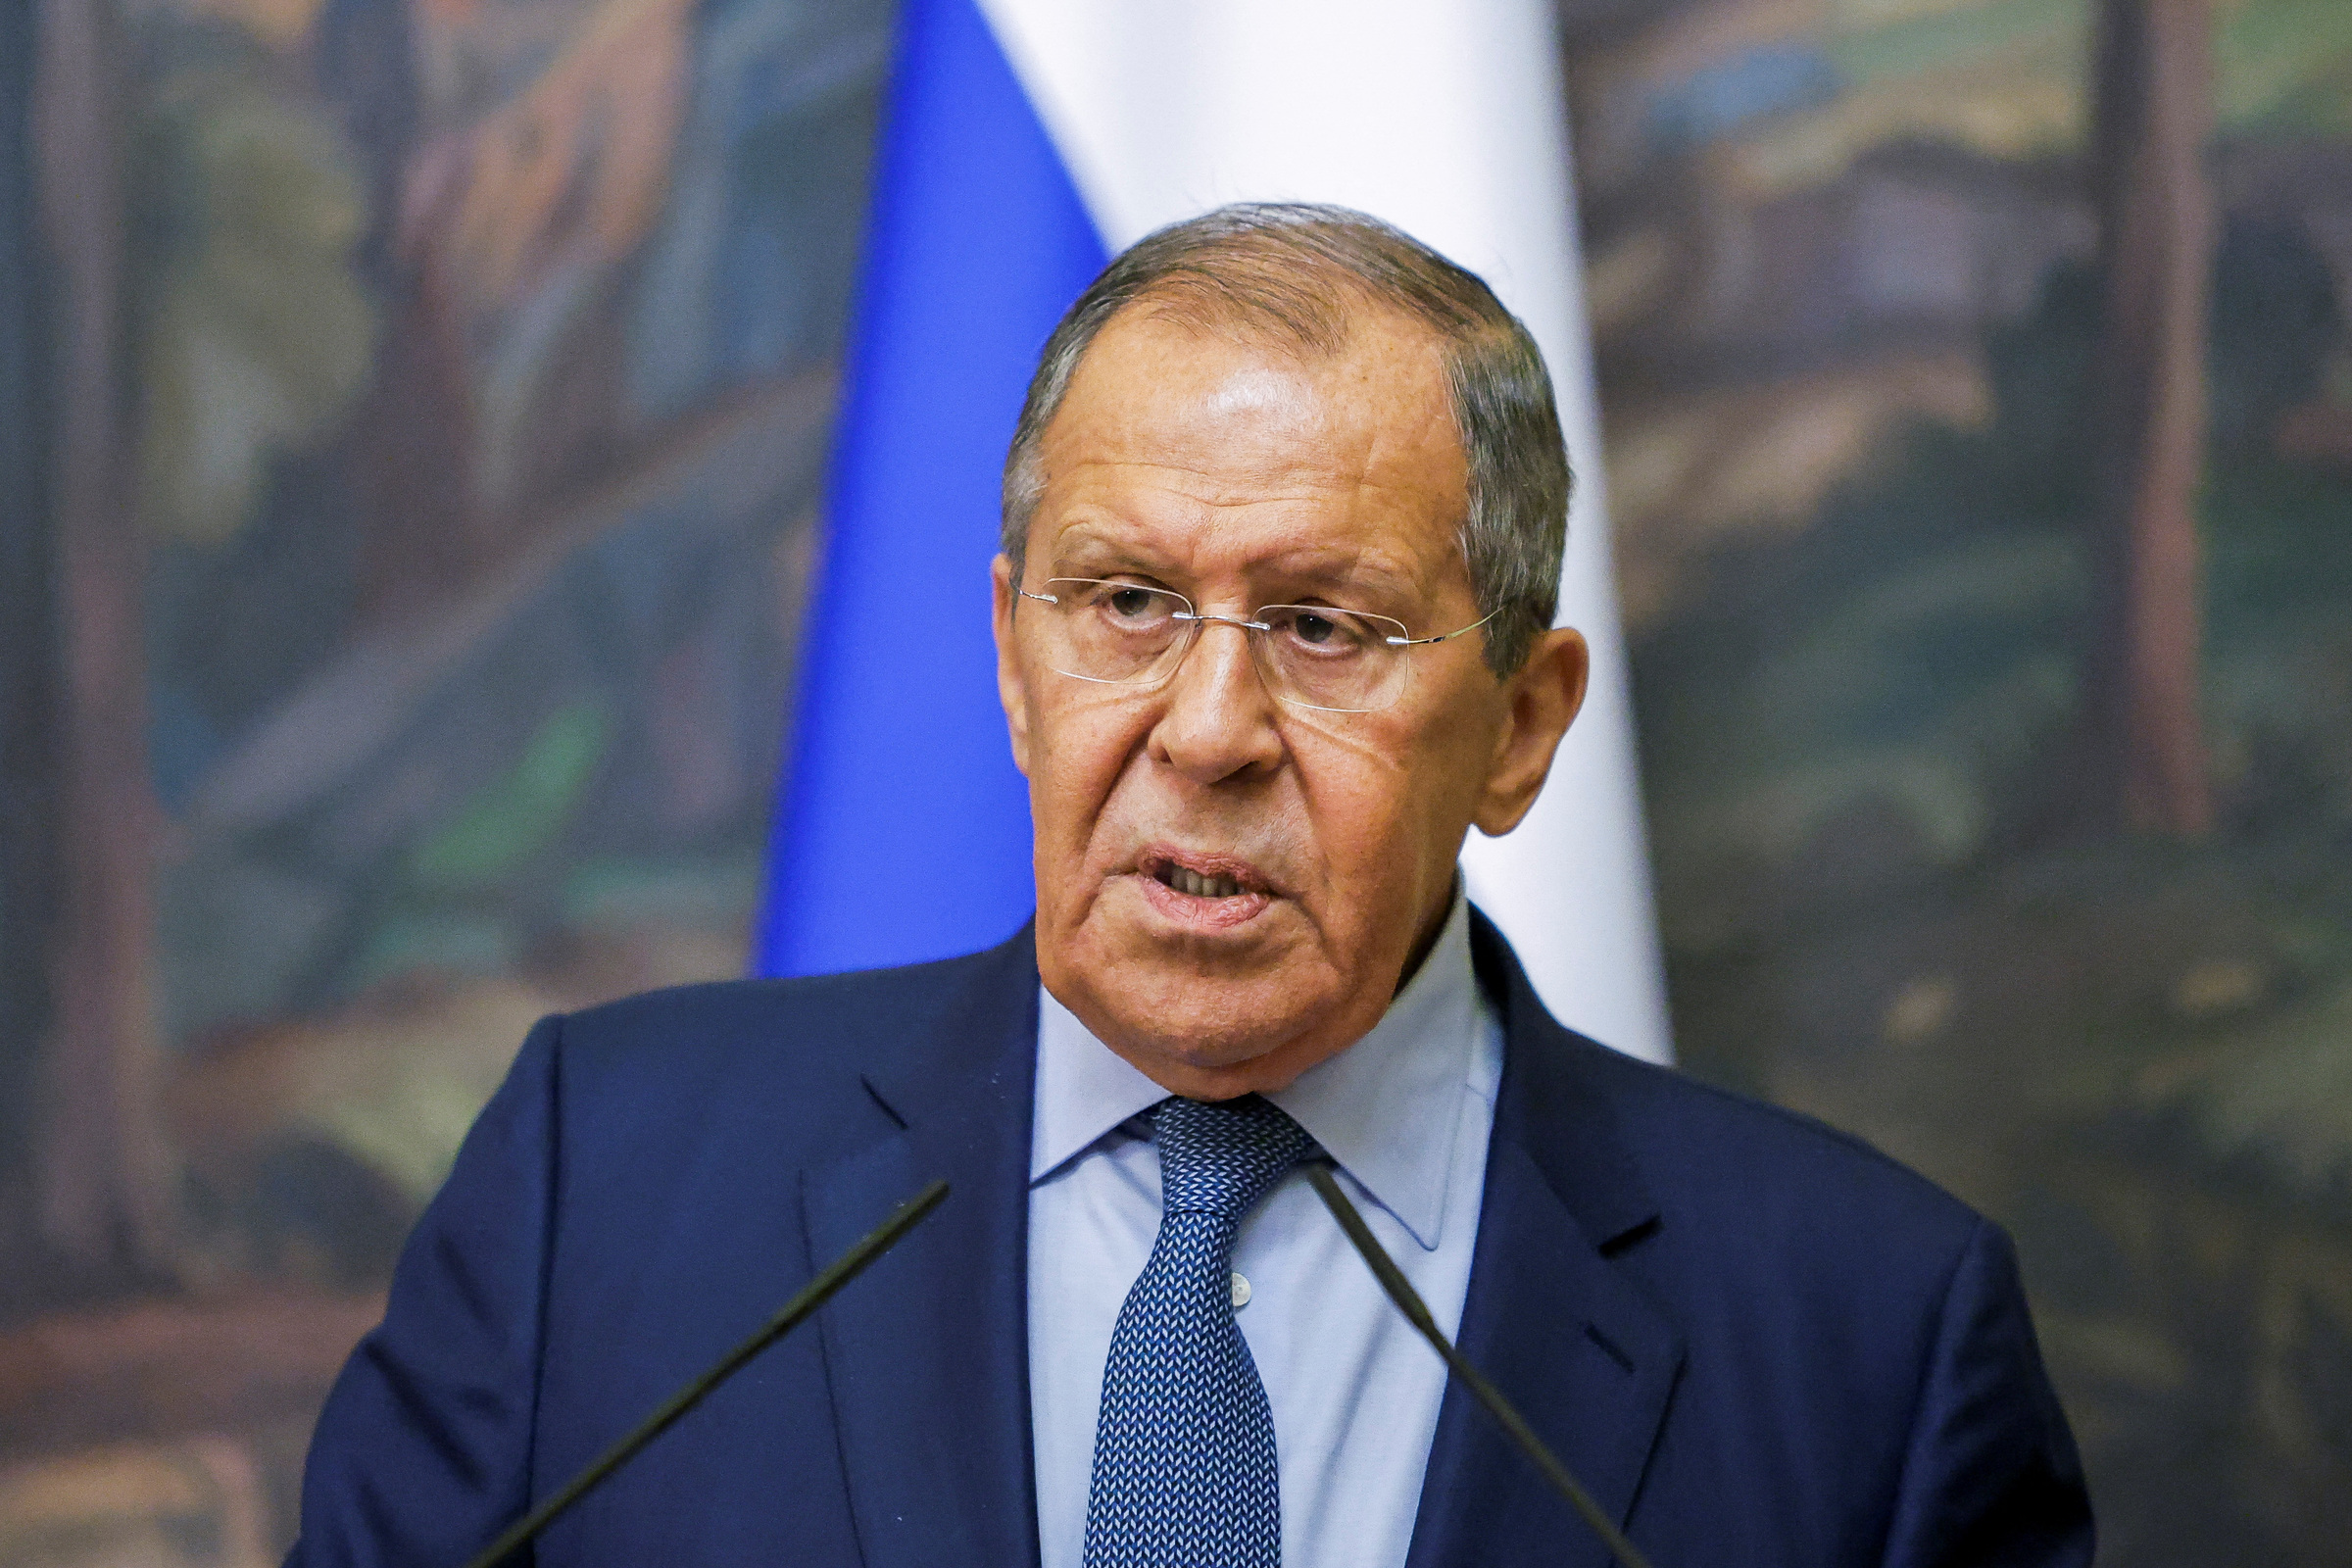 Ngoại trưởng Nga Sergei Lavrov tại cuộc họp báo chung với người đồng cấp Iran Hossein Amir-Abdollahian ở Moskva ngày 31/8. Ảnh: Reuters.